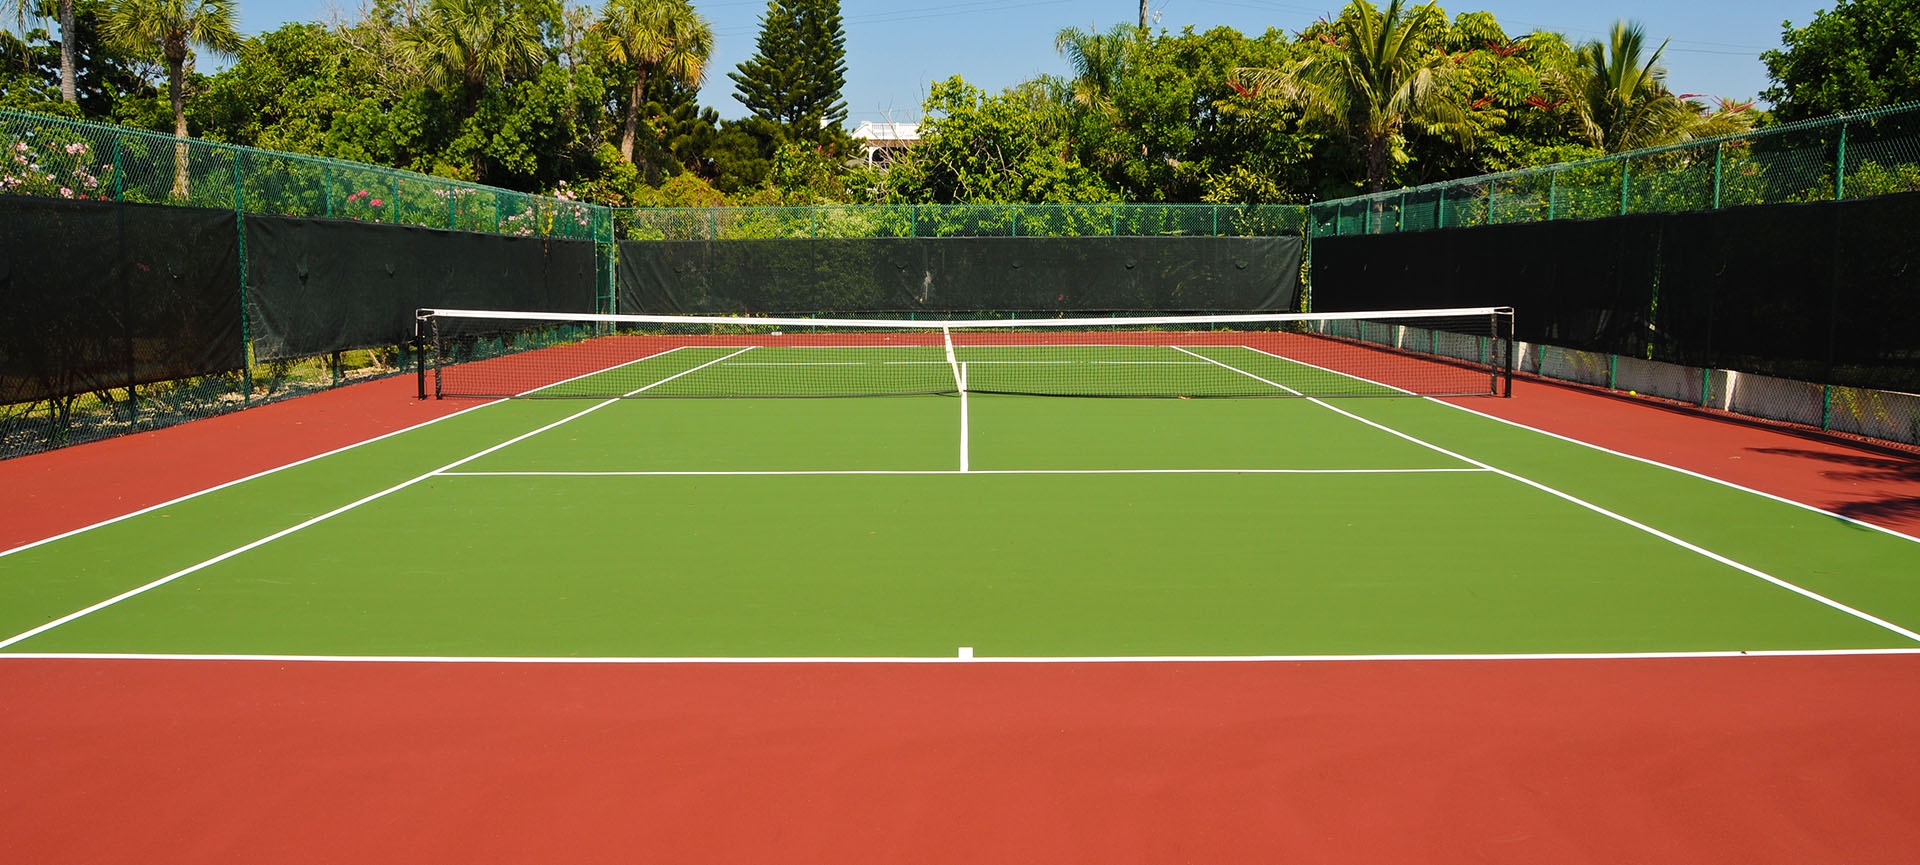 resurface a tennis court